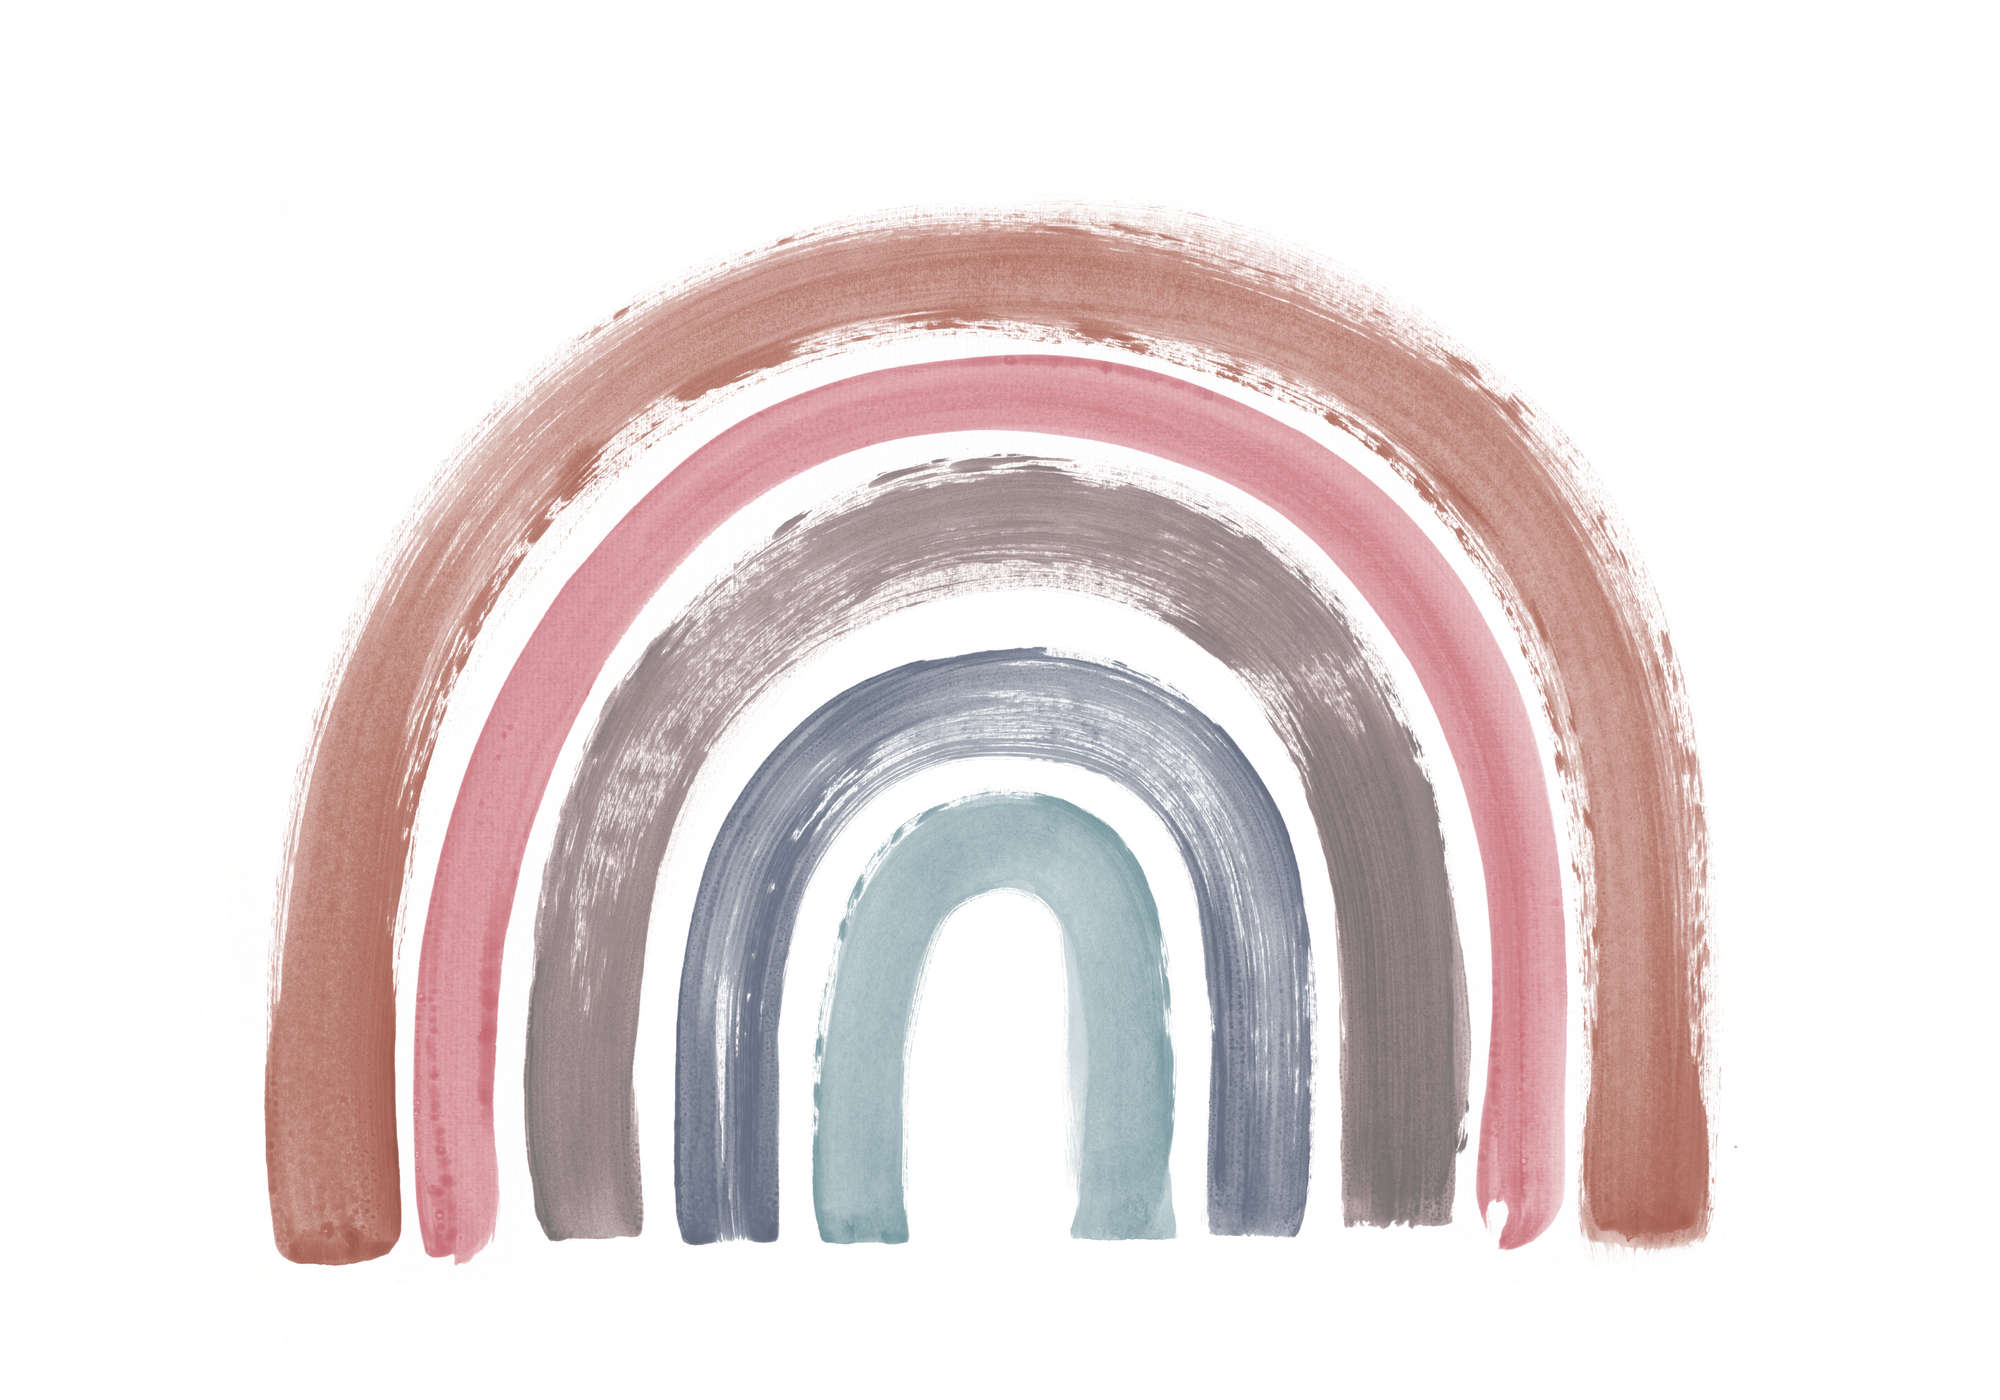             Papier peint panoramique boho arc-en-ciel aux couleurs sobres
        